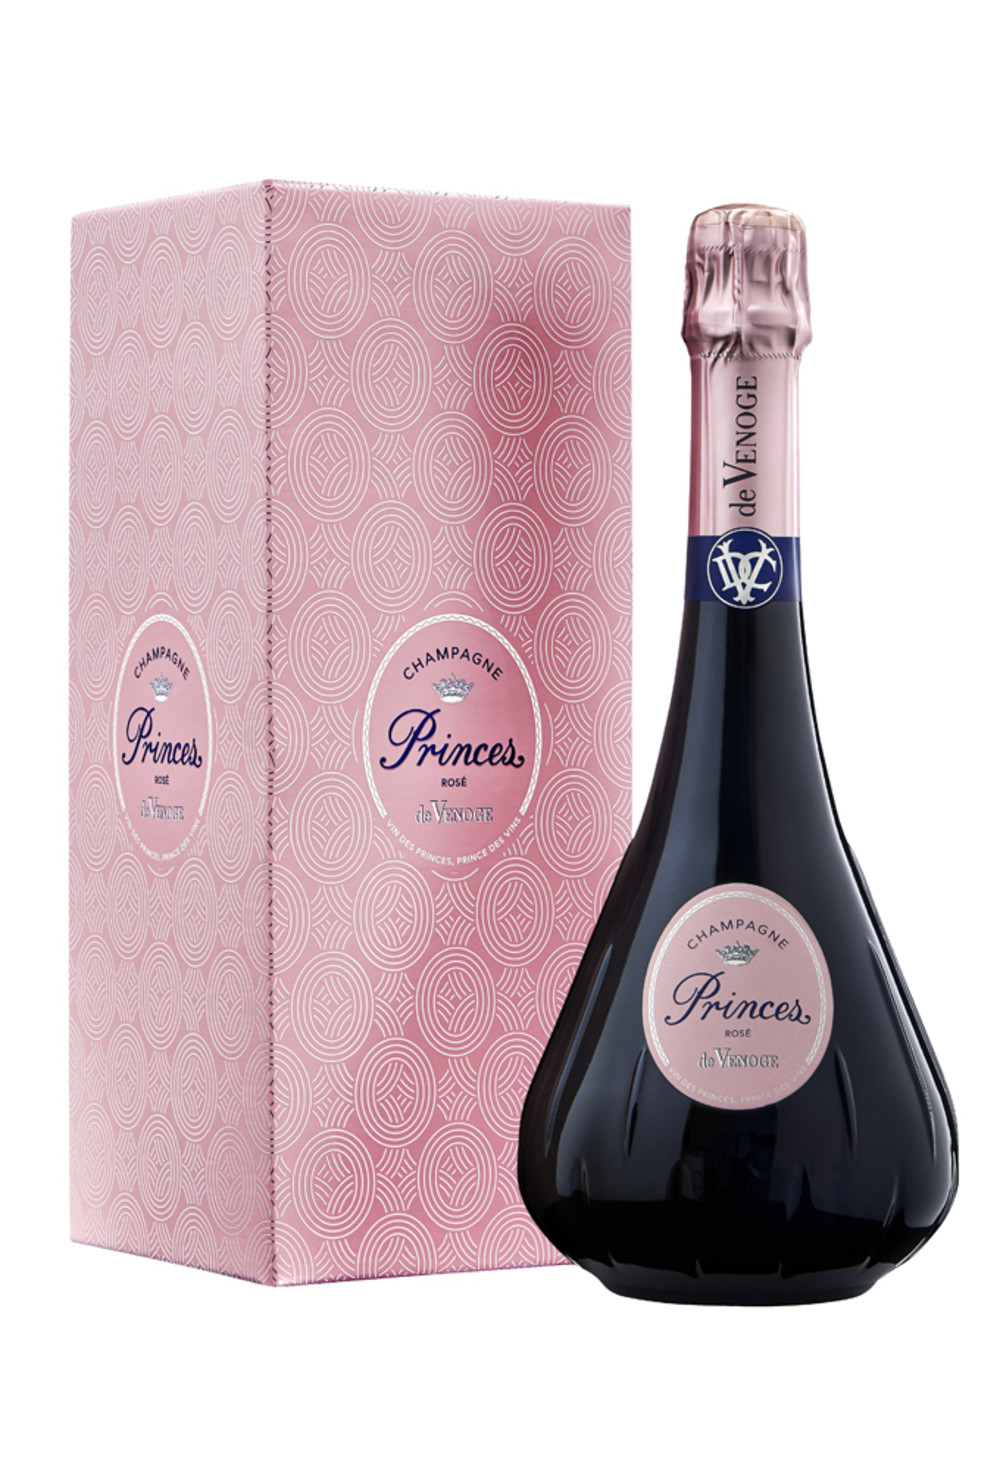 Champagne DeVENOGE_PRINCES_ROSE et etui_Packshot.jpg